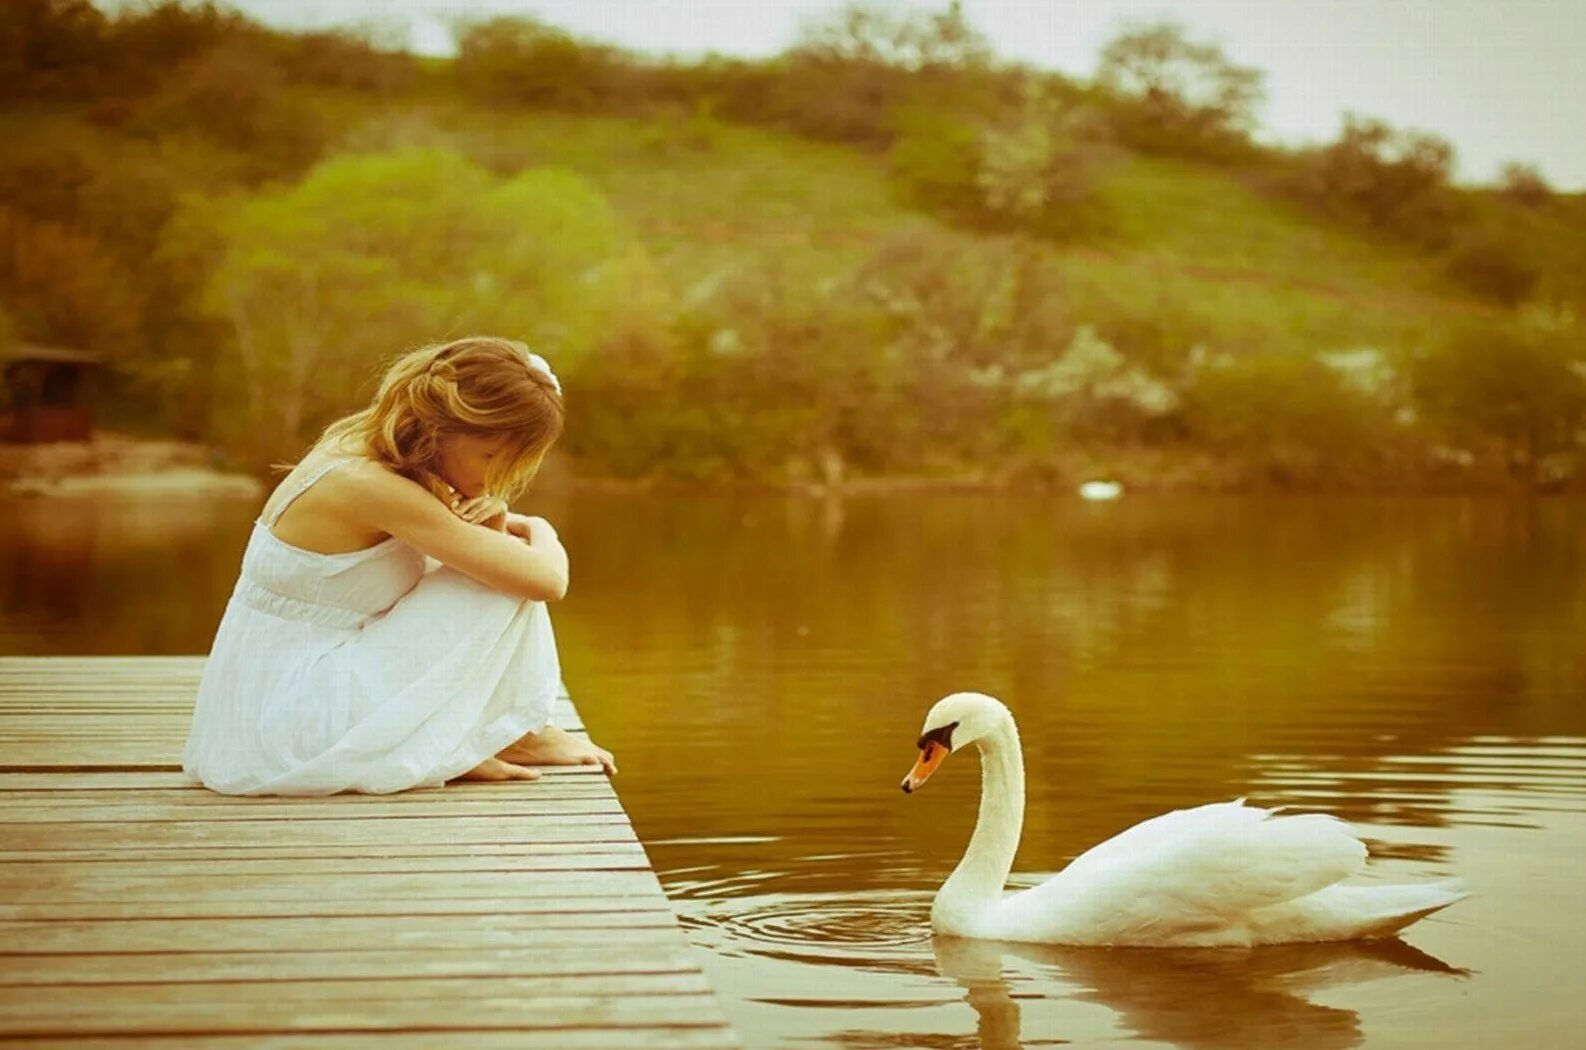 Красота главное в жизни. Красота души. Девушка у озера с лебедями. Душевная девушка. Доброта и простота.